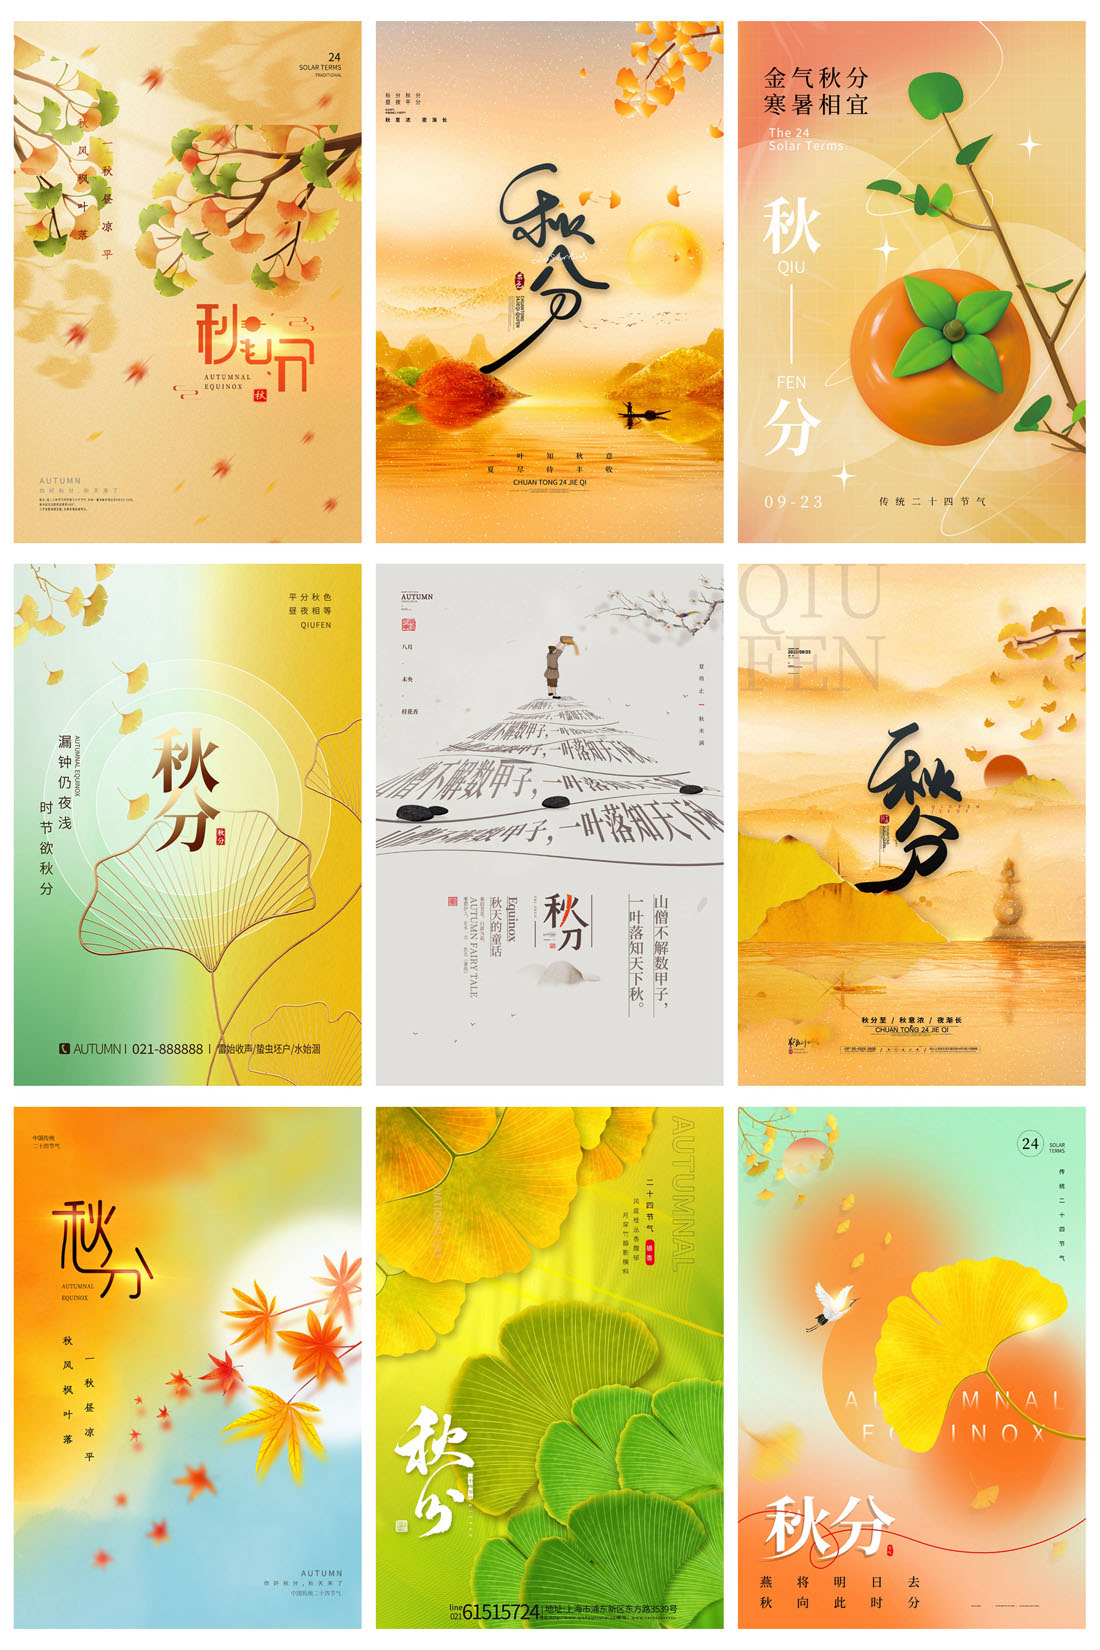 52款中国传统节日二十四节气秋分节日宣传海报PSD模板 设计素材 第9张